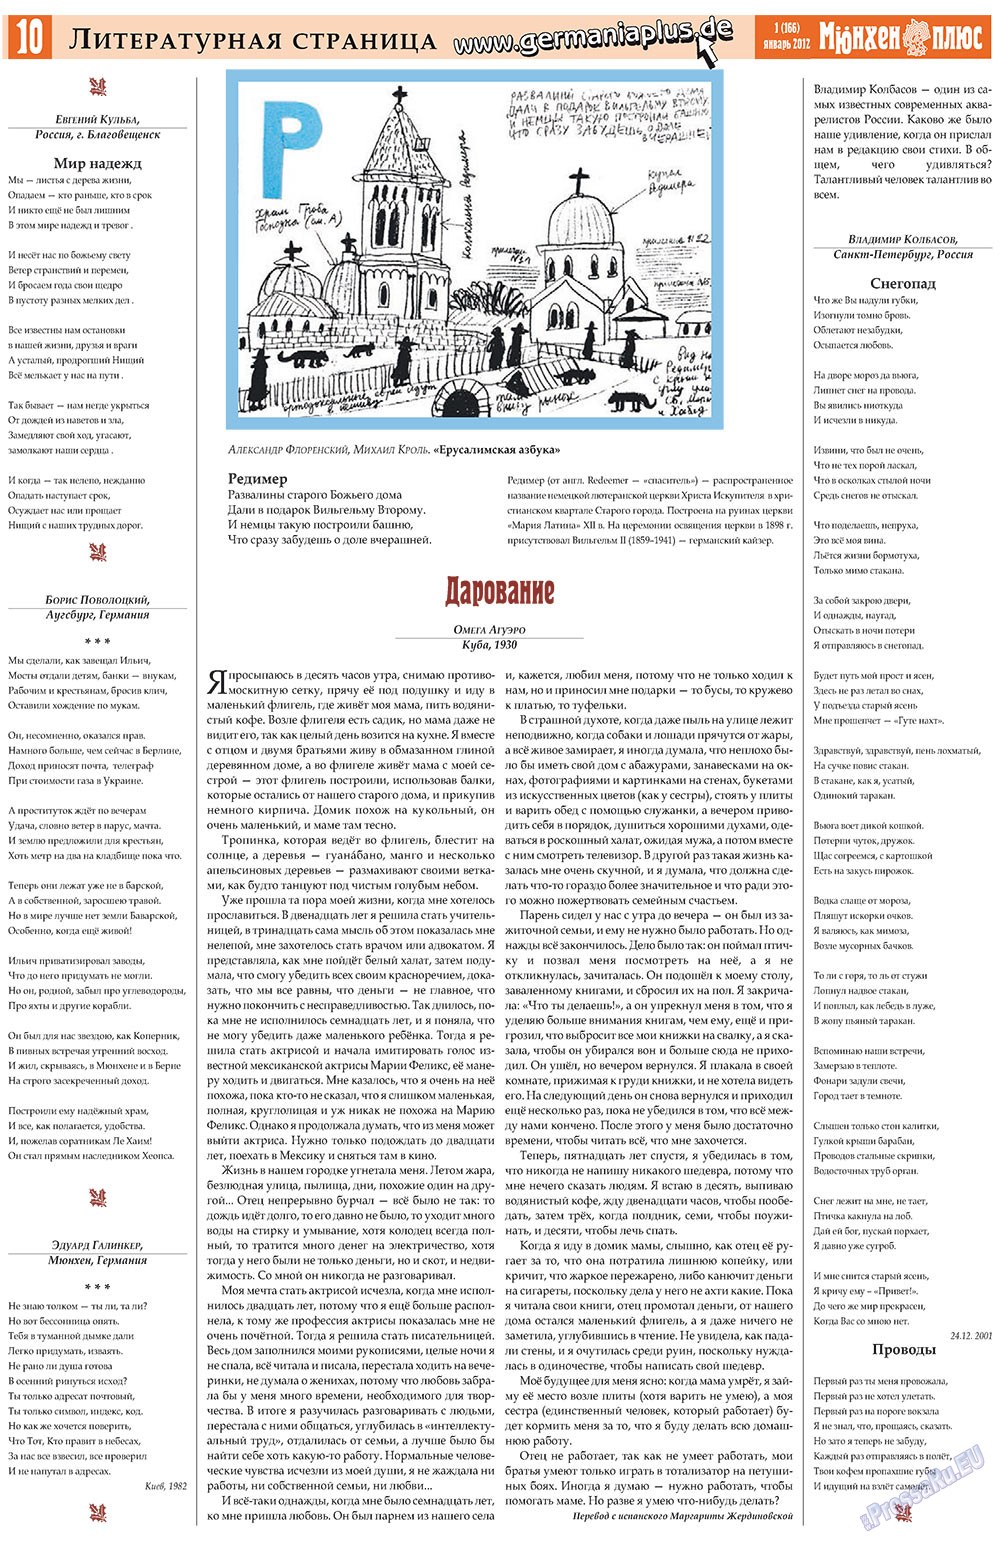 Германия плюс (газета). 2012 год, номер 1, стр. 10